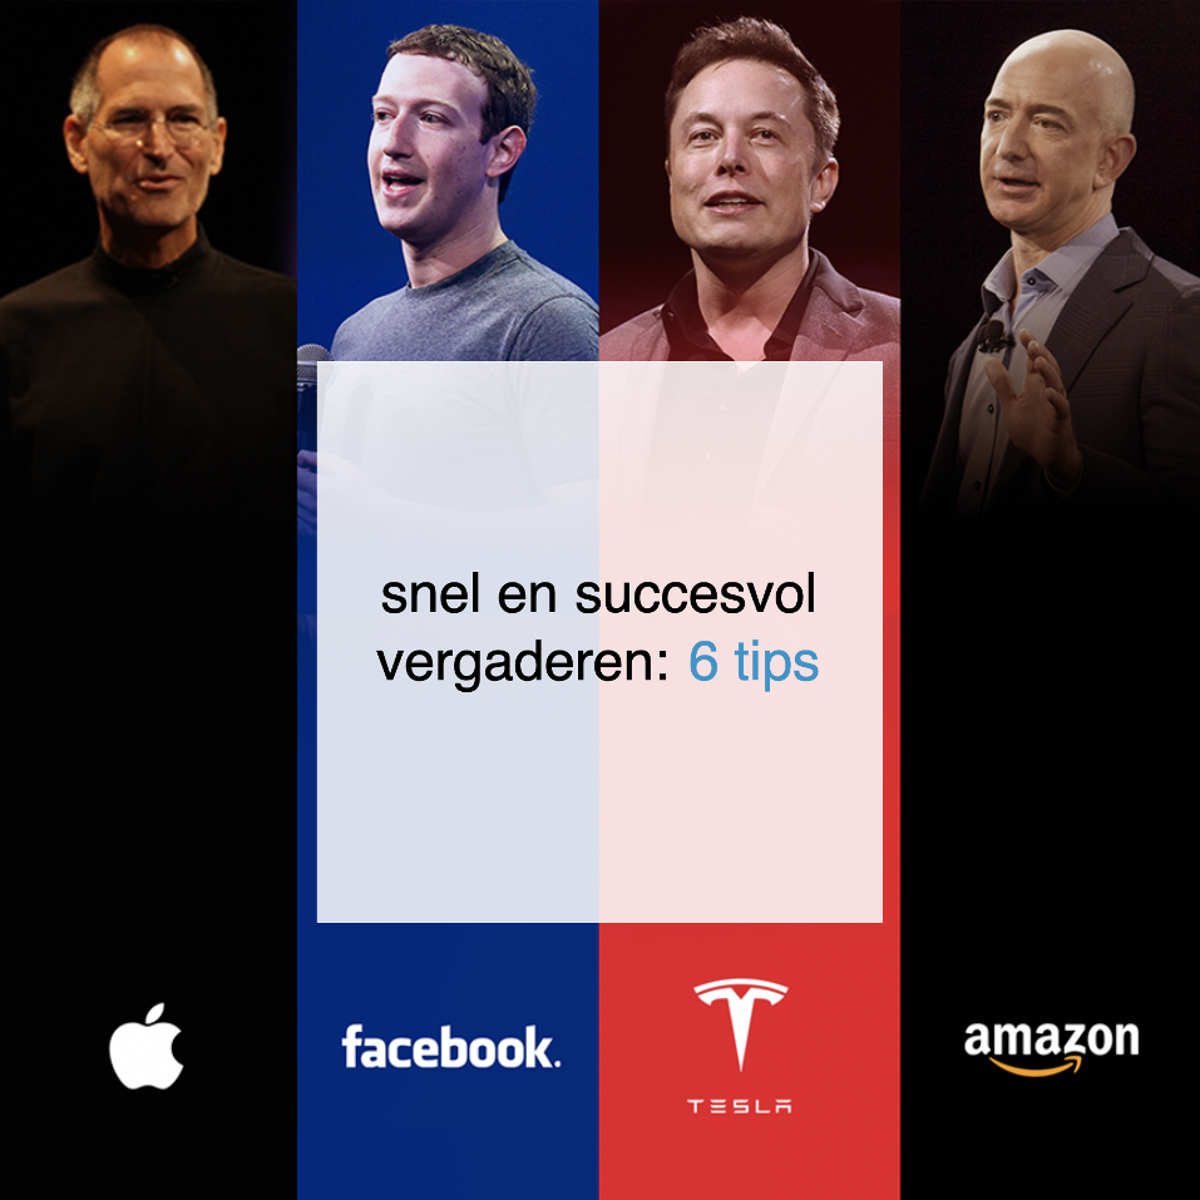 snel en succesvol vergaderen: 6 tips van Elon Musk, Jeff Bezos, Mark Zuckerberg en Steve Jobs